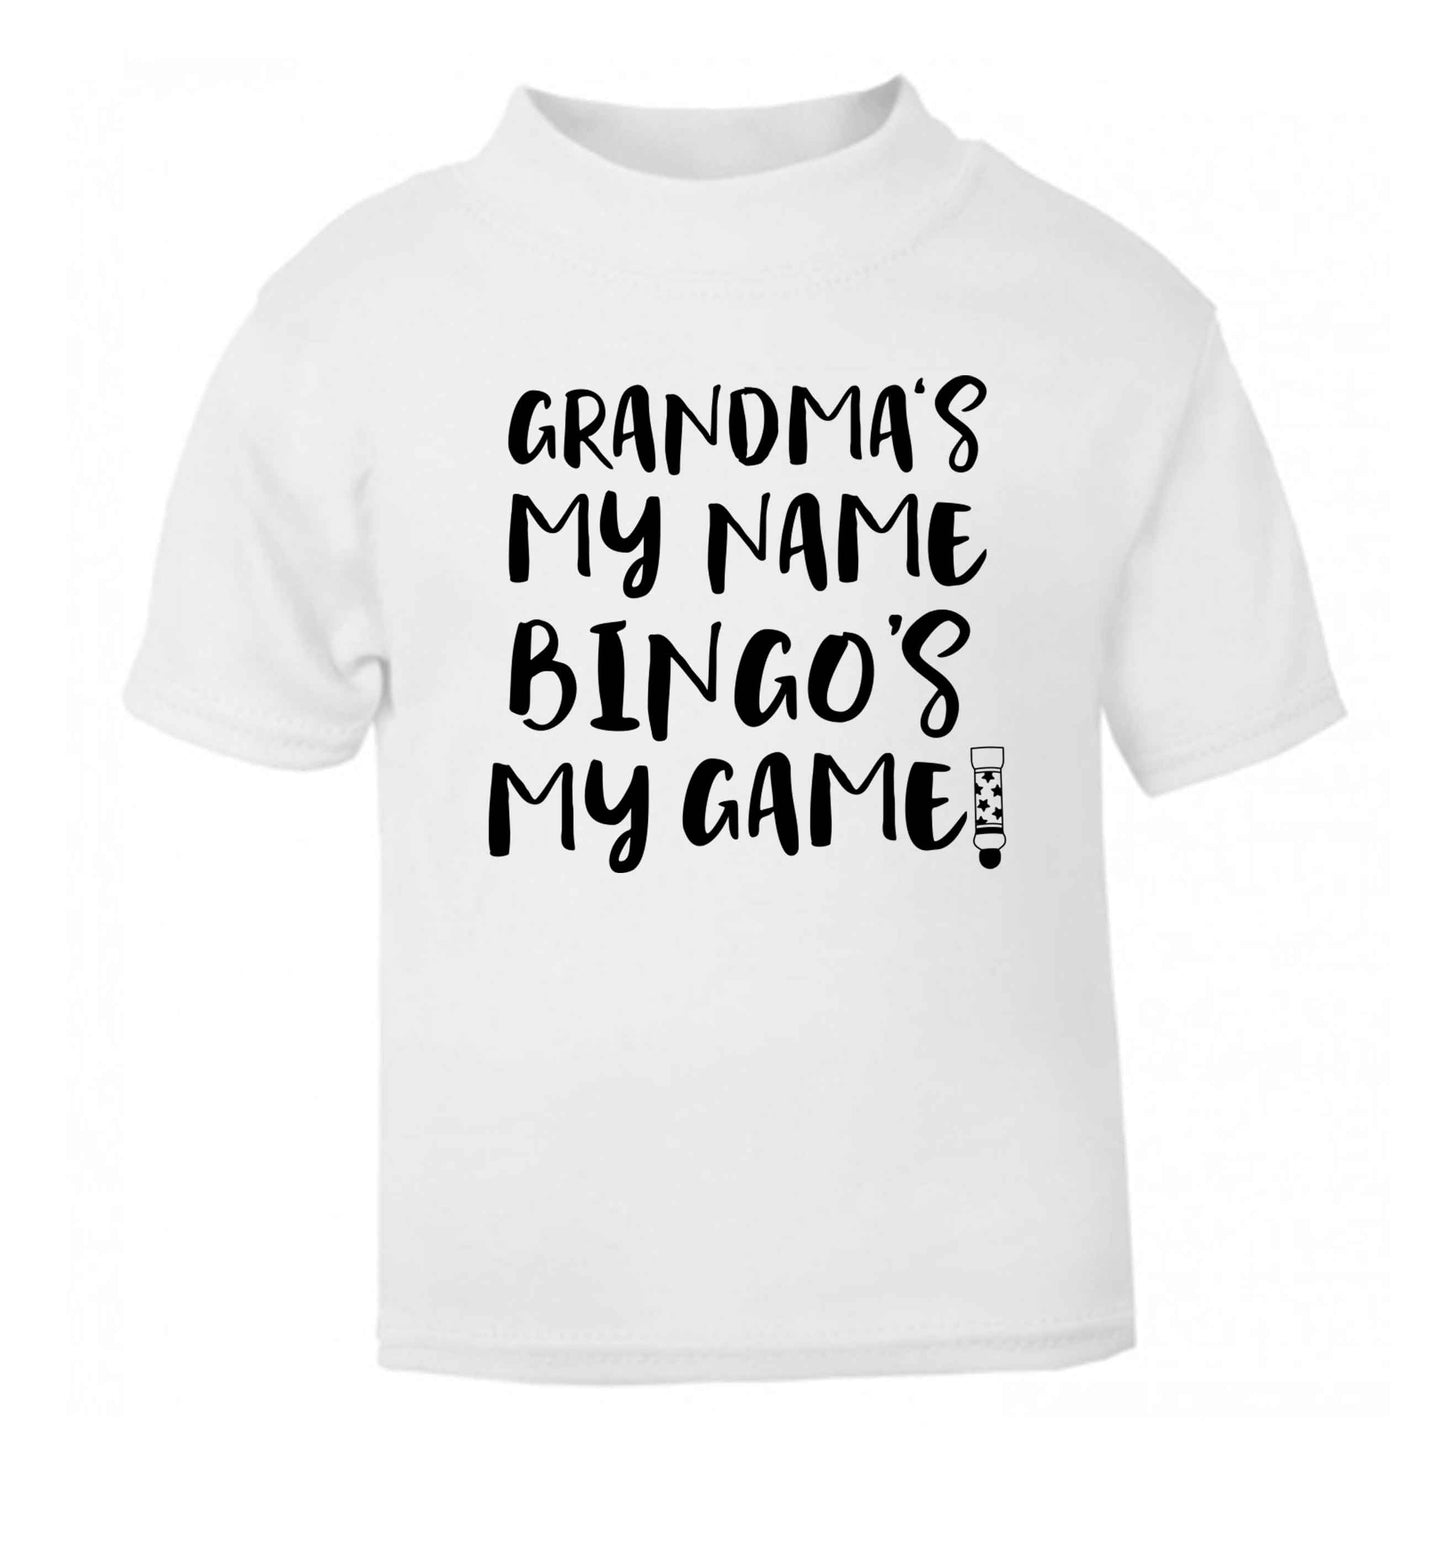 Grandma's my name bingo's my game! white Baby Toddler Tshirt 2 Years